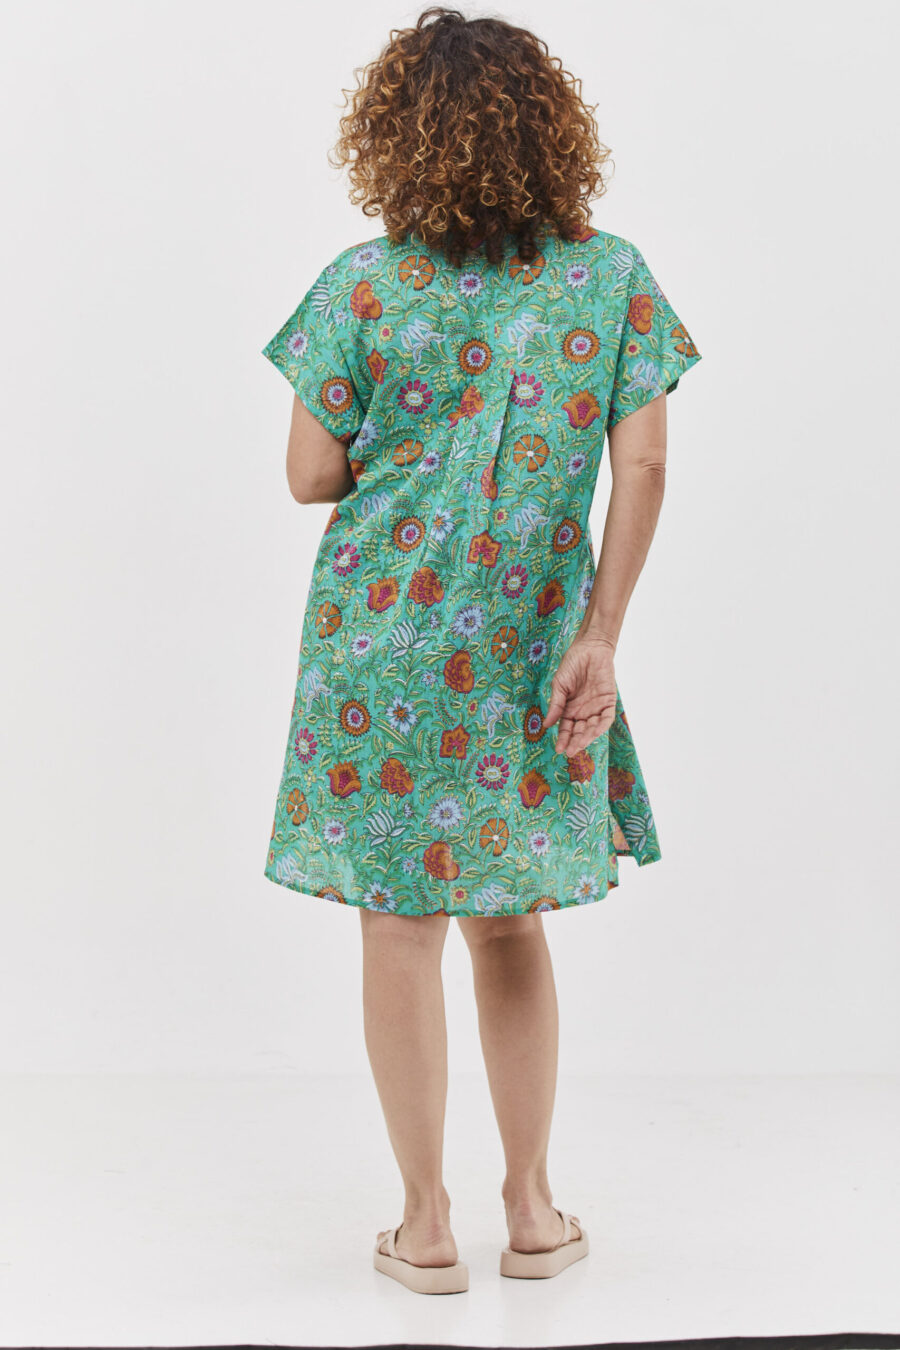 שמלת סיגי | שמלת אוברסייז קצרה בעיצוב ייחודי לכל המידות כולל מידות גדולות - פרינט סימפוני, שמלה בצבע טורקיז ירקרק עם הדפס פרחוני צבעוני.